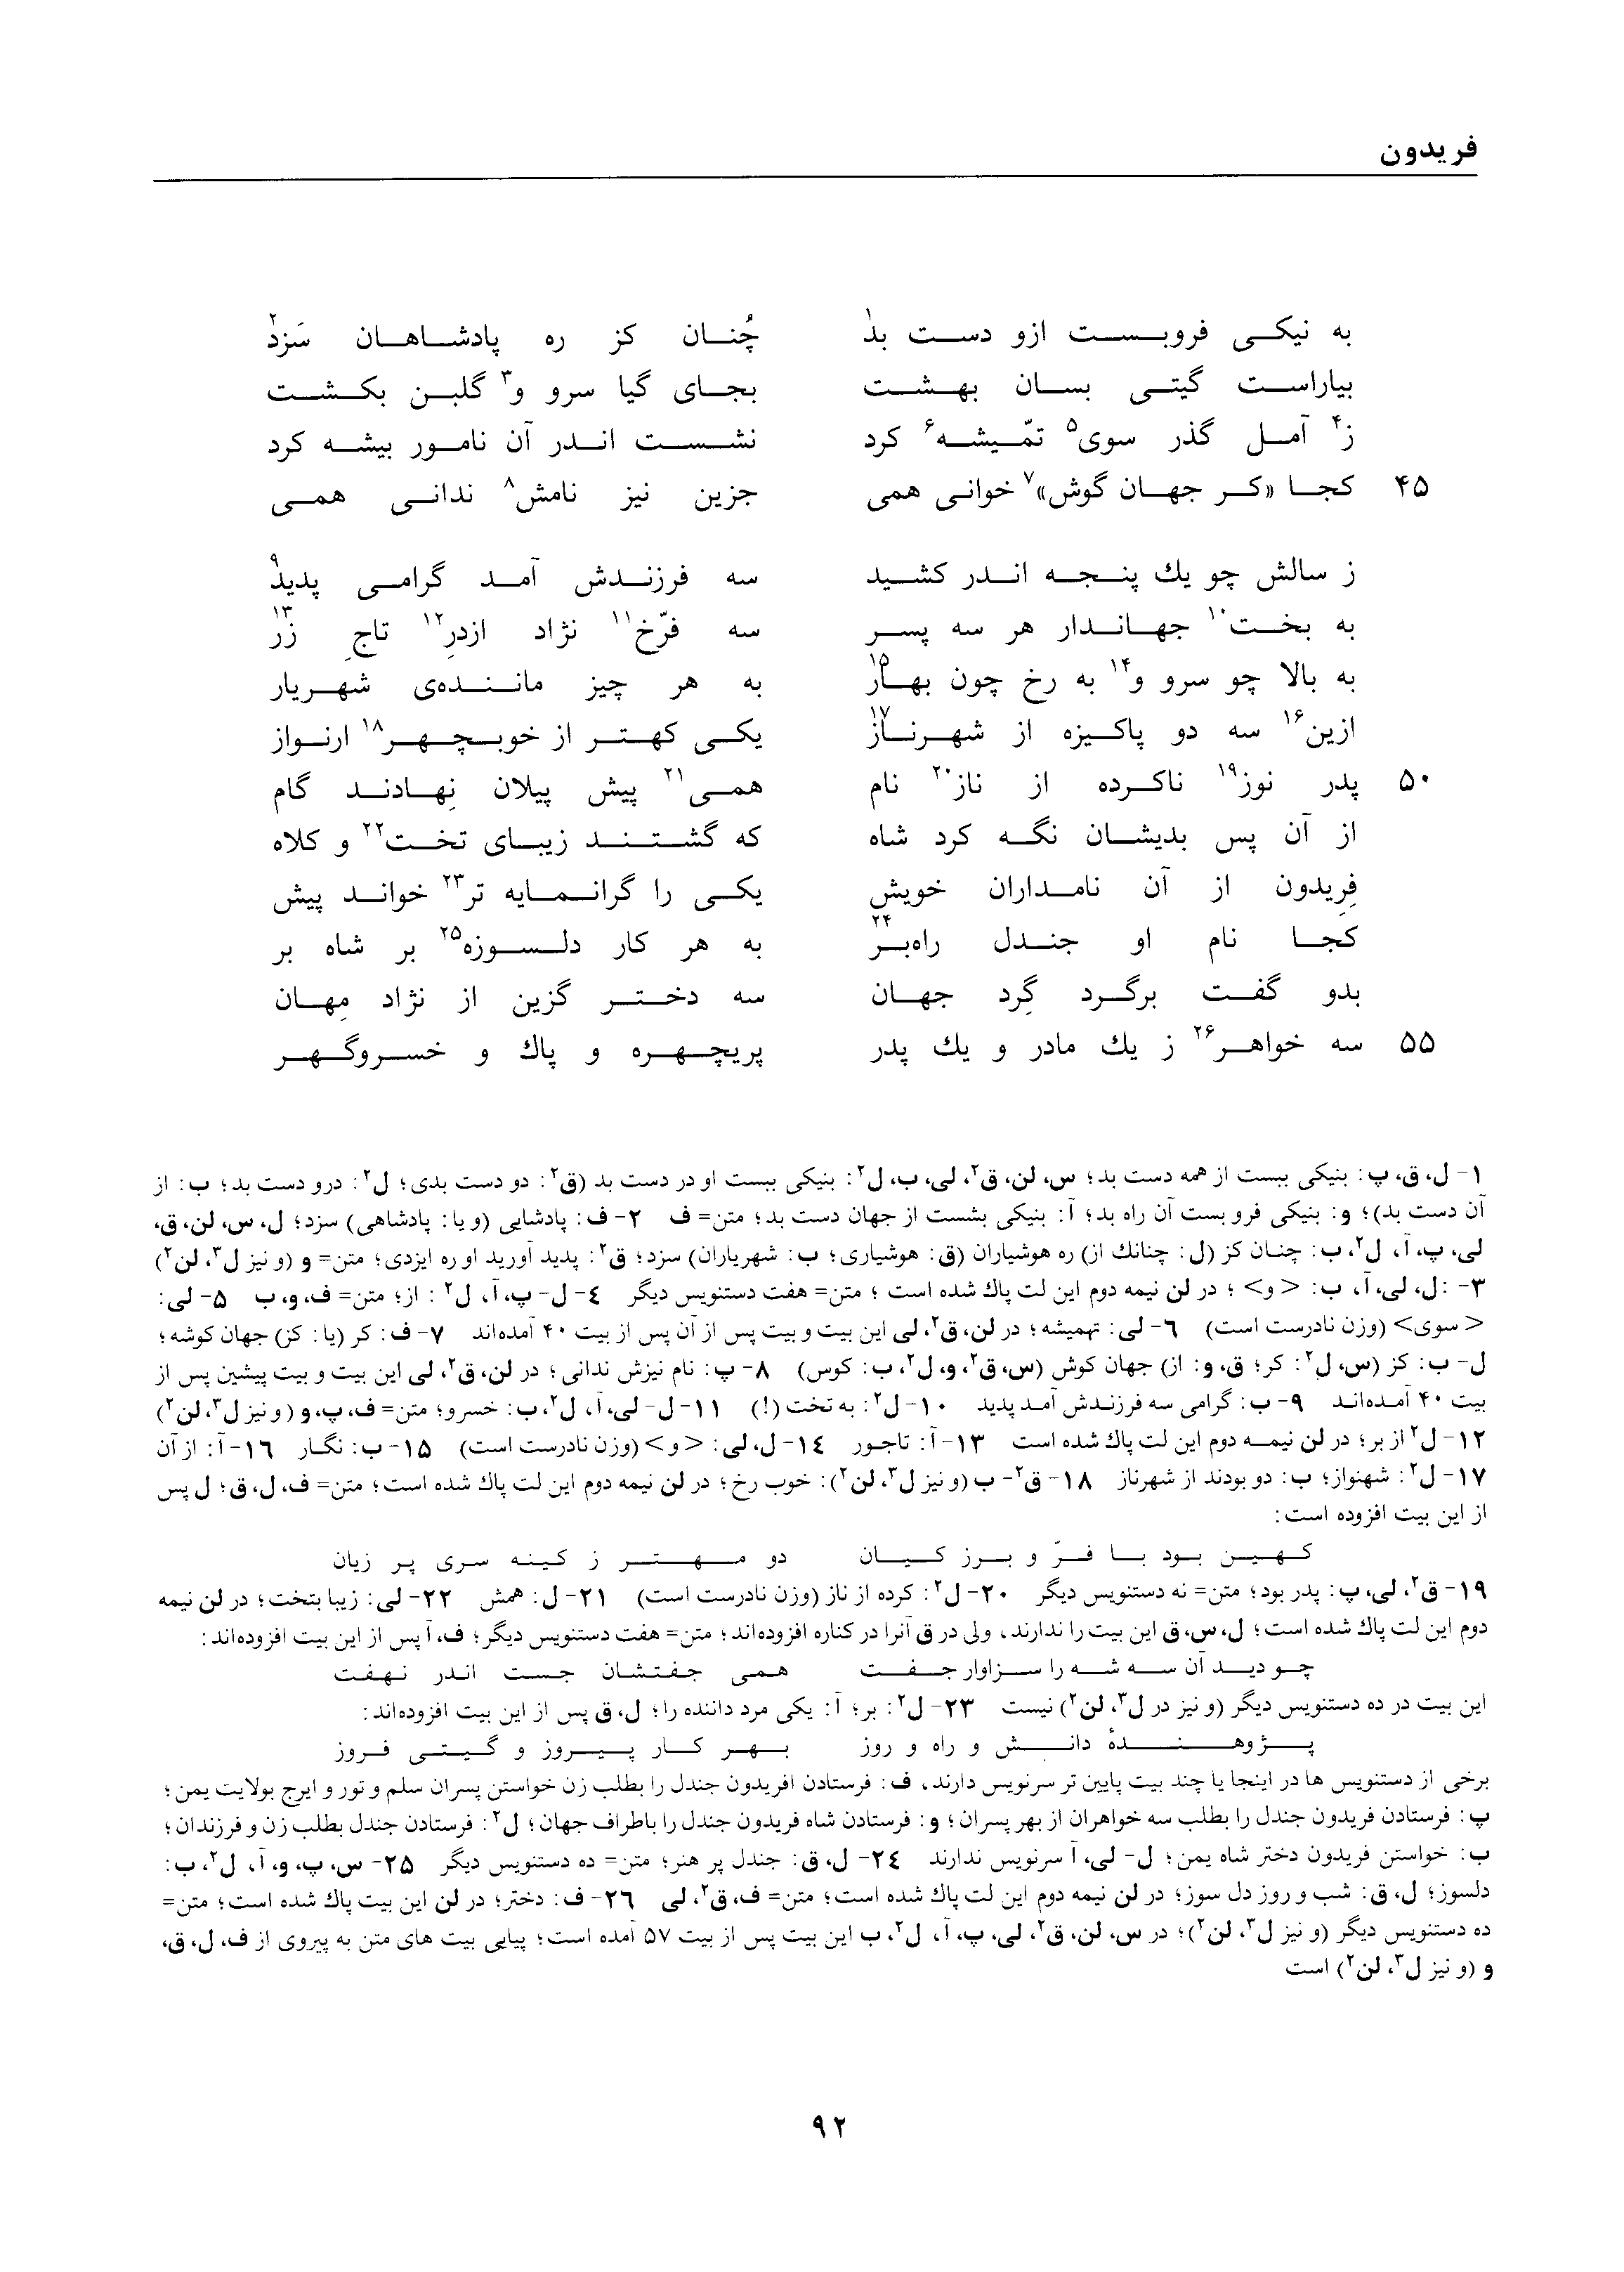 vol. 1, p. 92